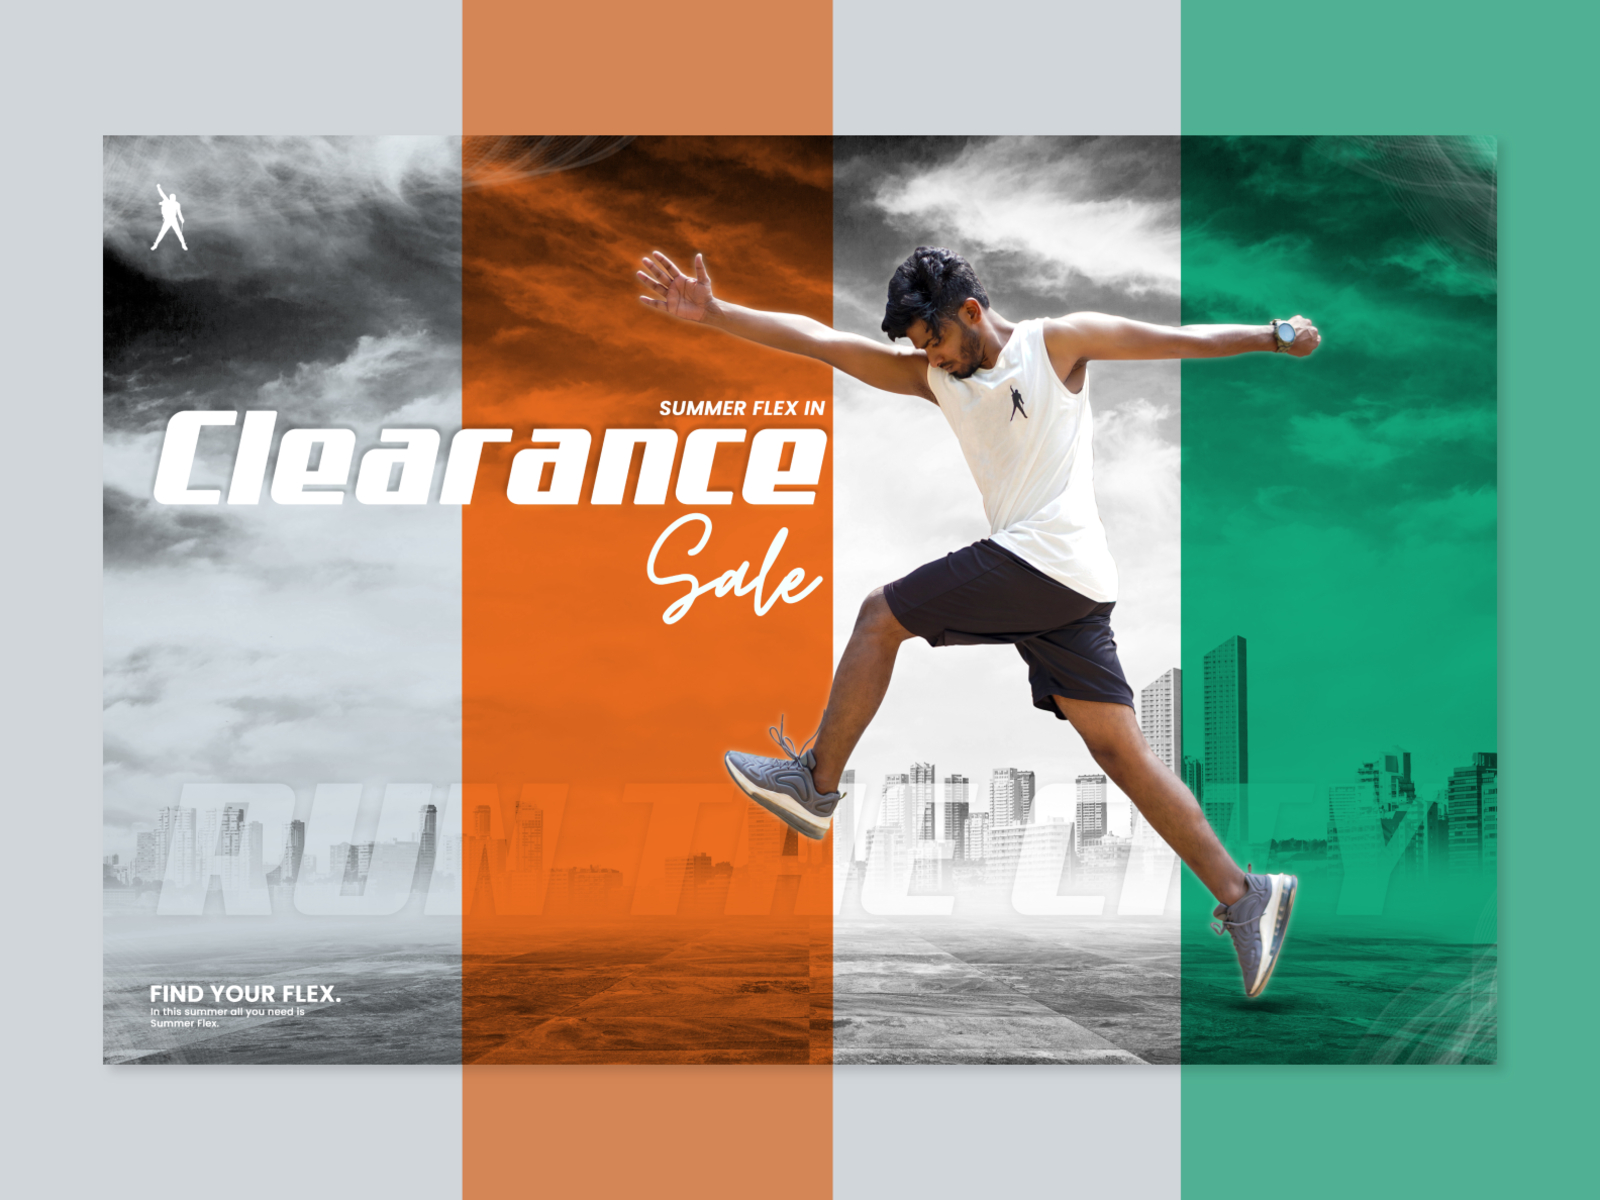 Clearance Sale Offer Poster adobe photoshop design facebook flex graphic design offer poster social media banner vector